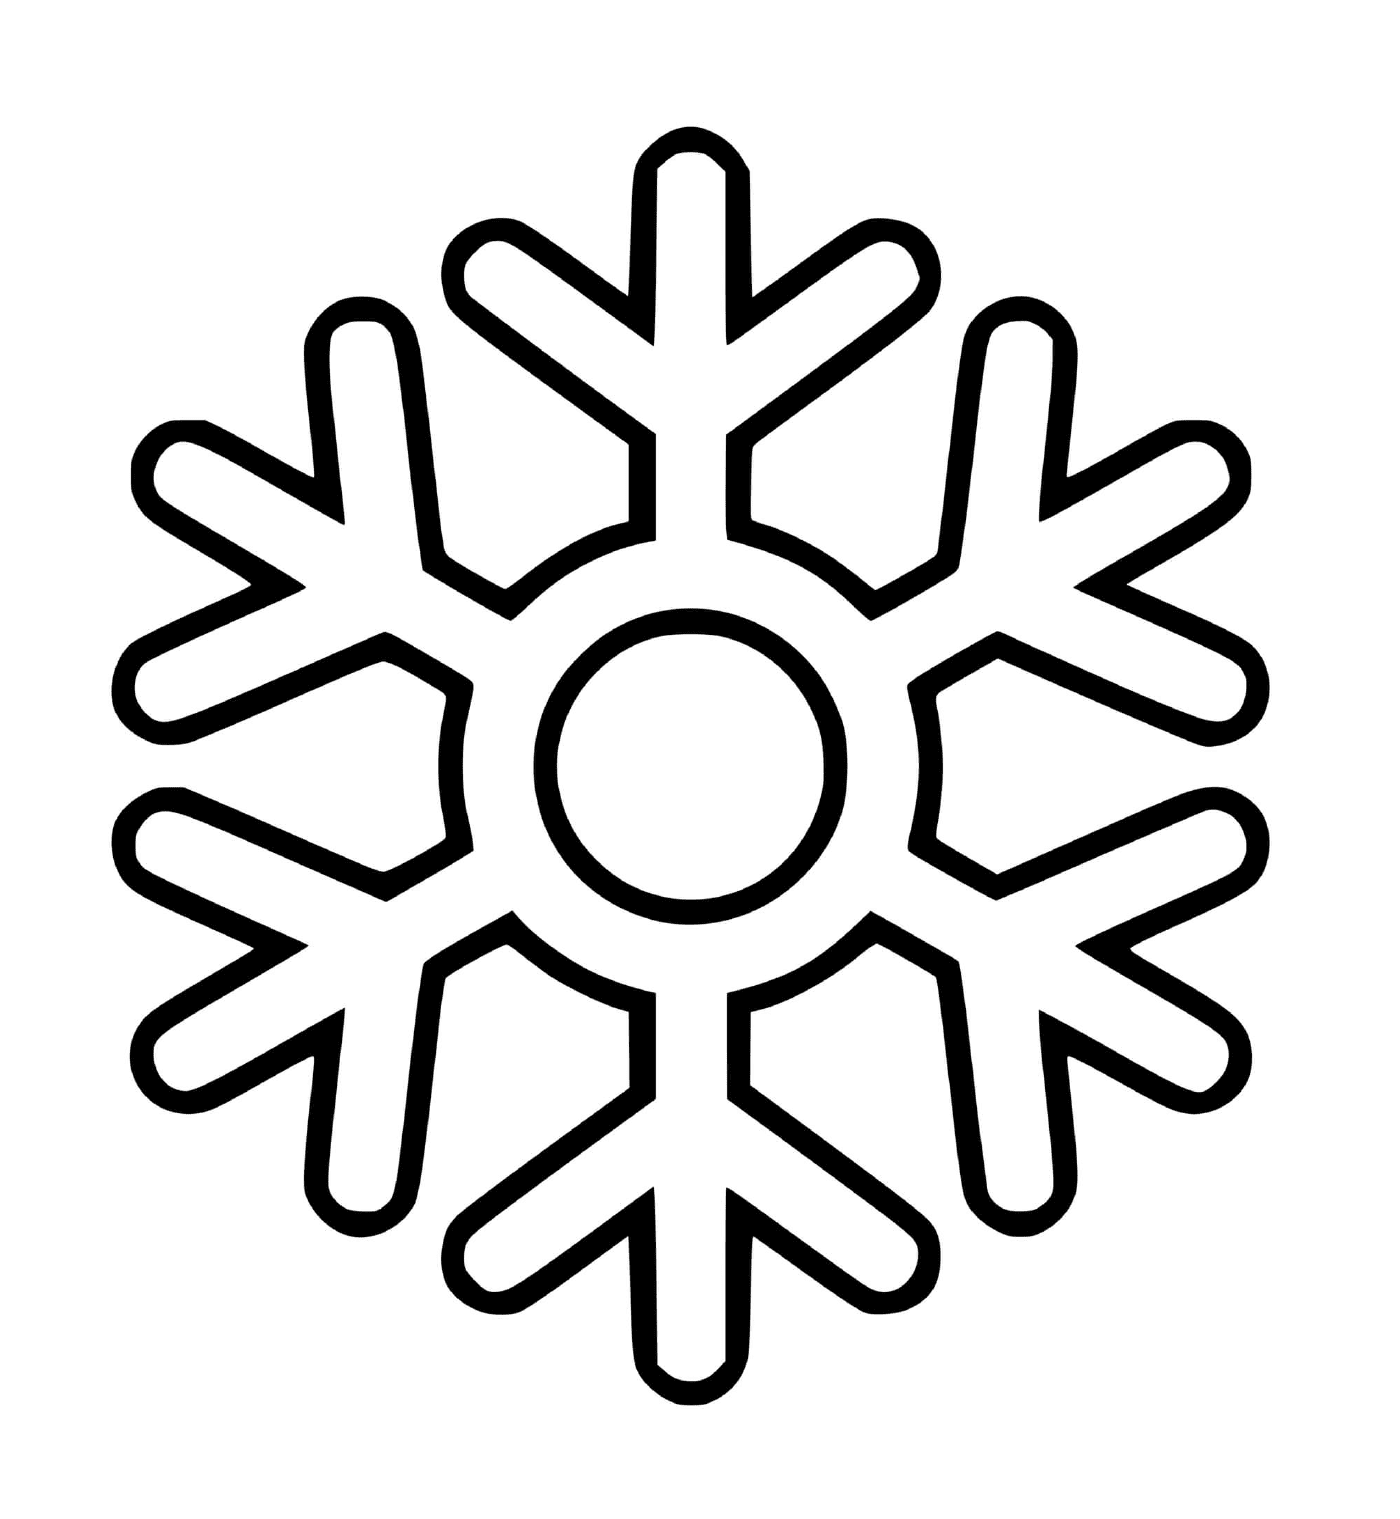  Снежинка с простым кругом 